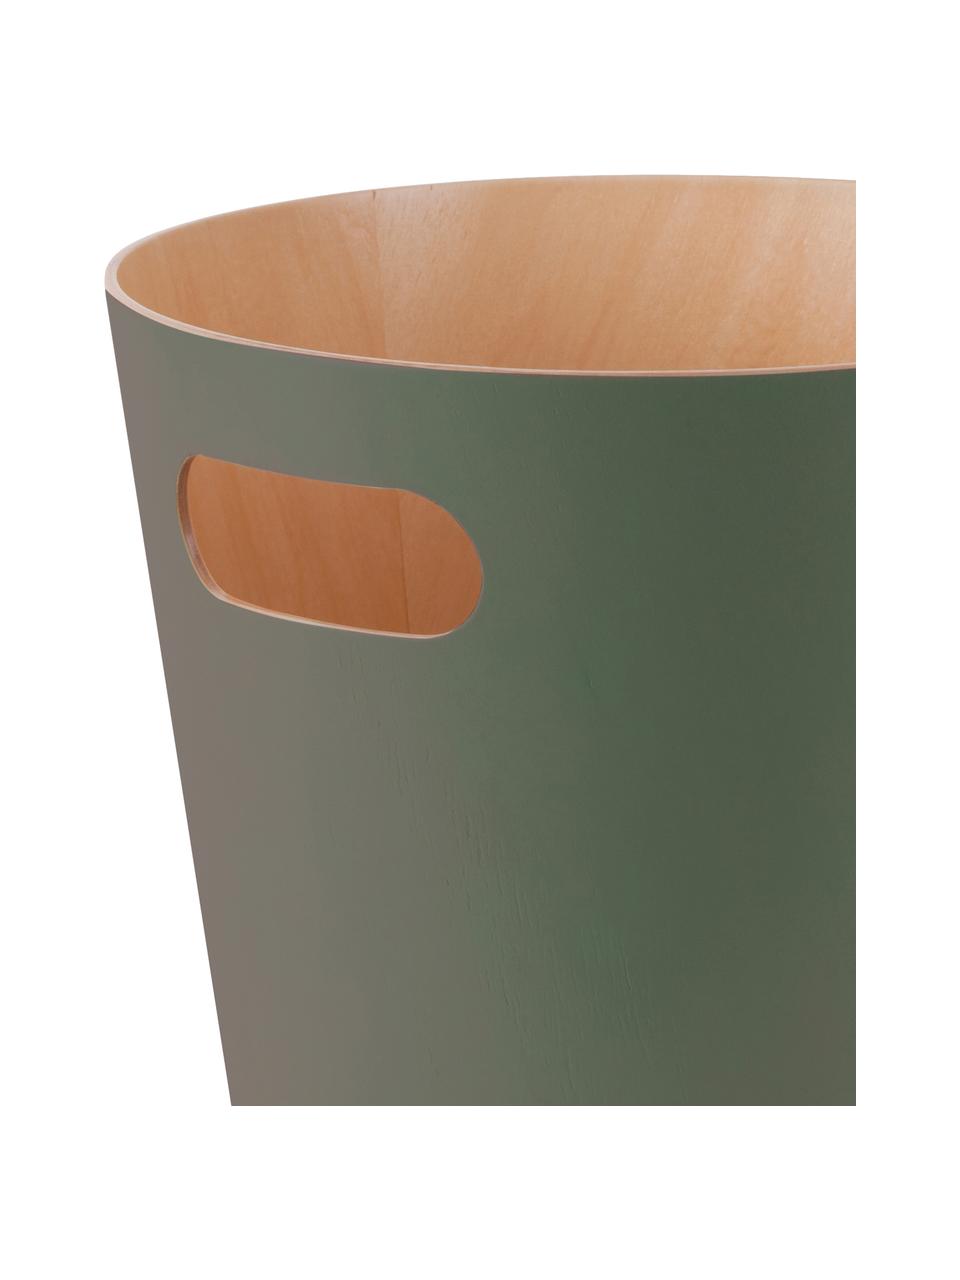 Kosz na śmieci Woodrow Can, Drewno lakierowane, Oliwkowy zielony, Ø 23 x W 28 cm